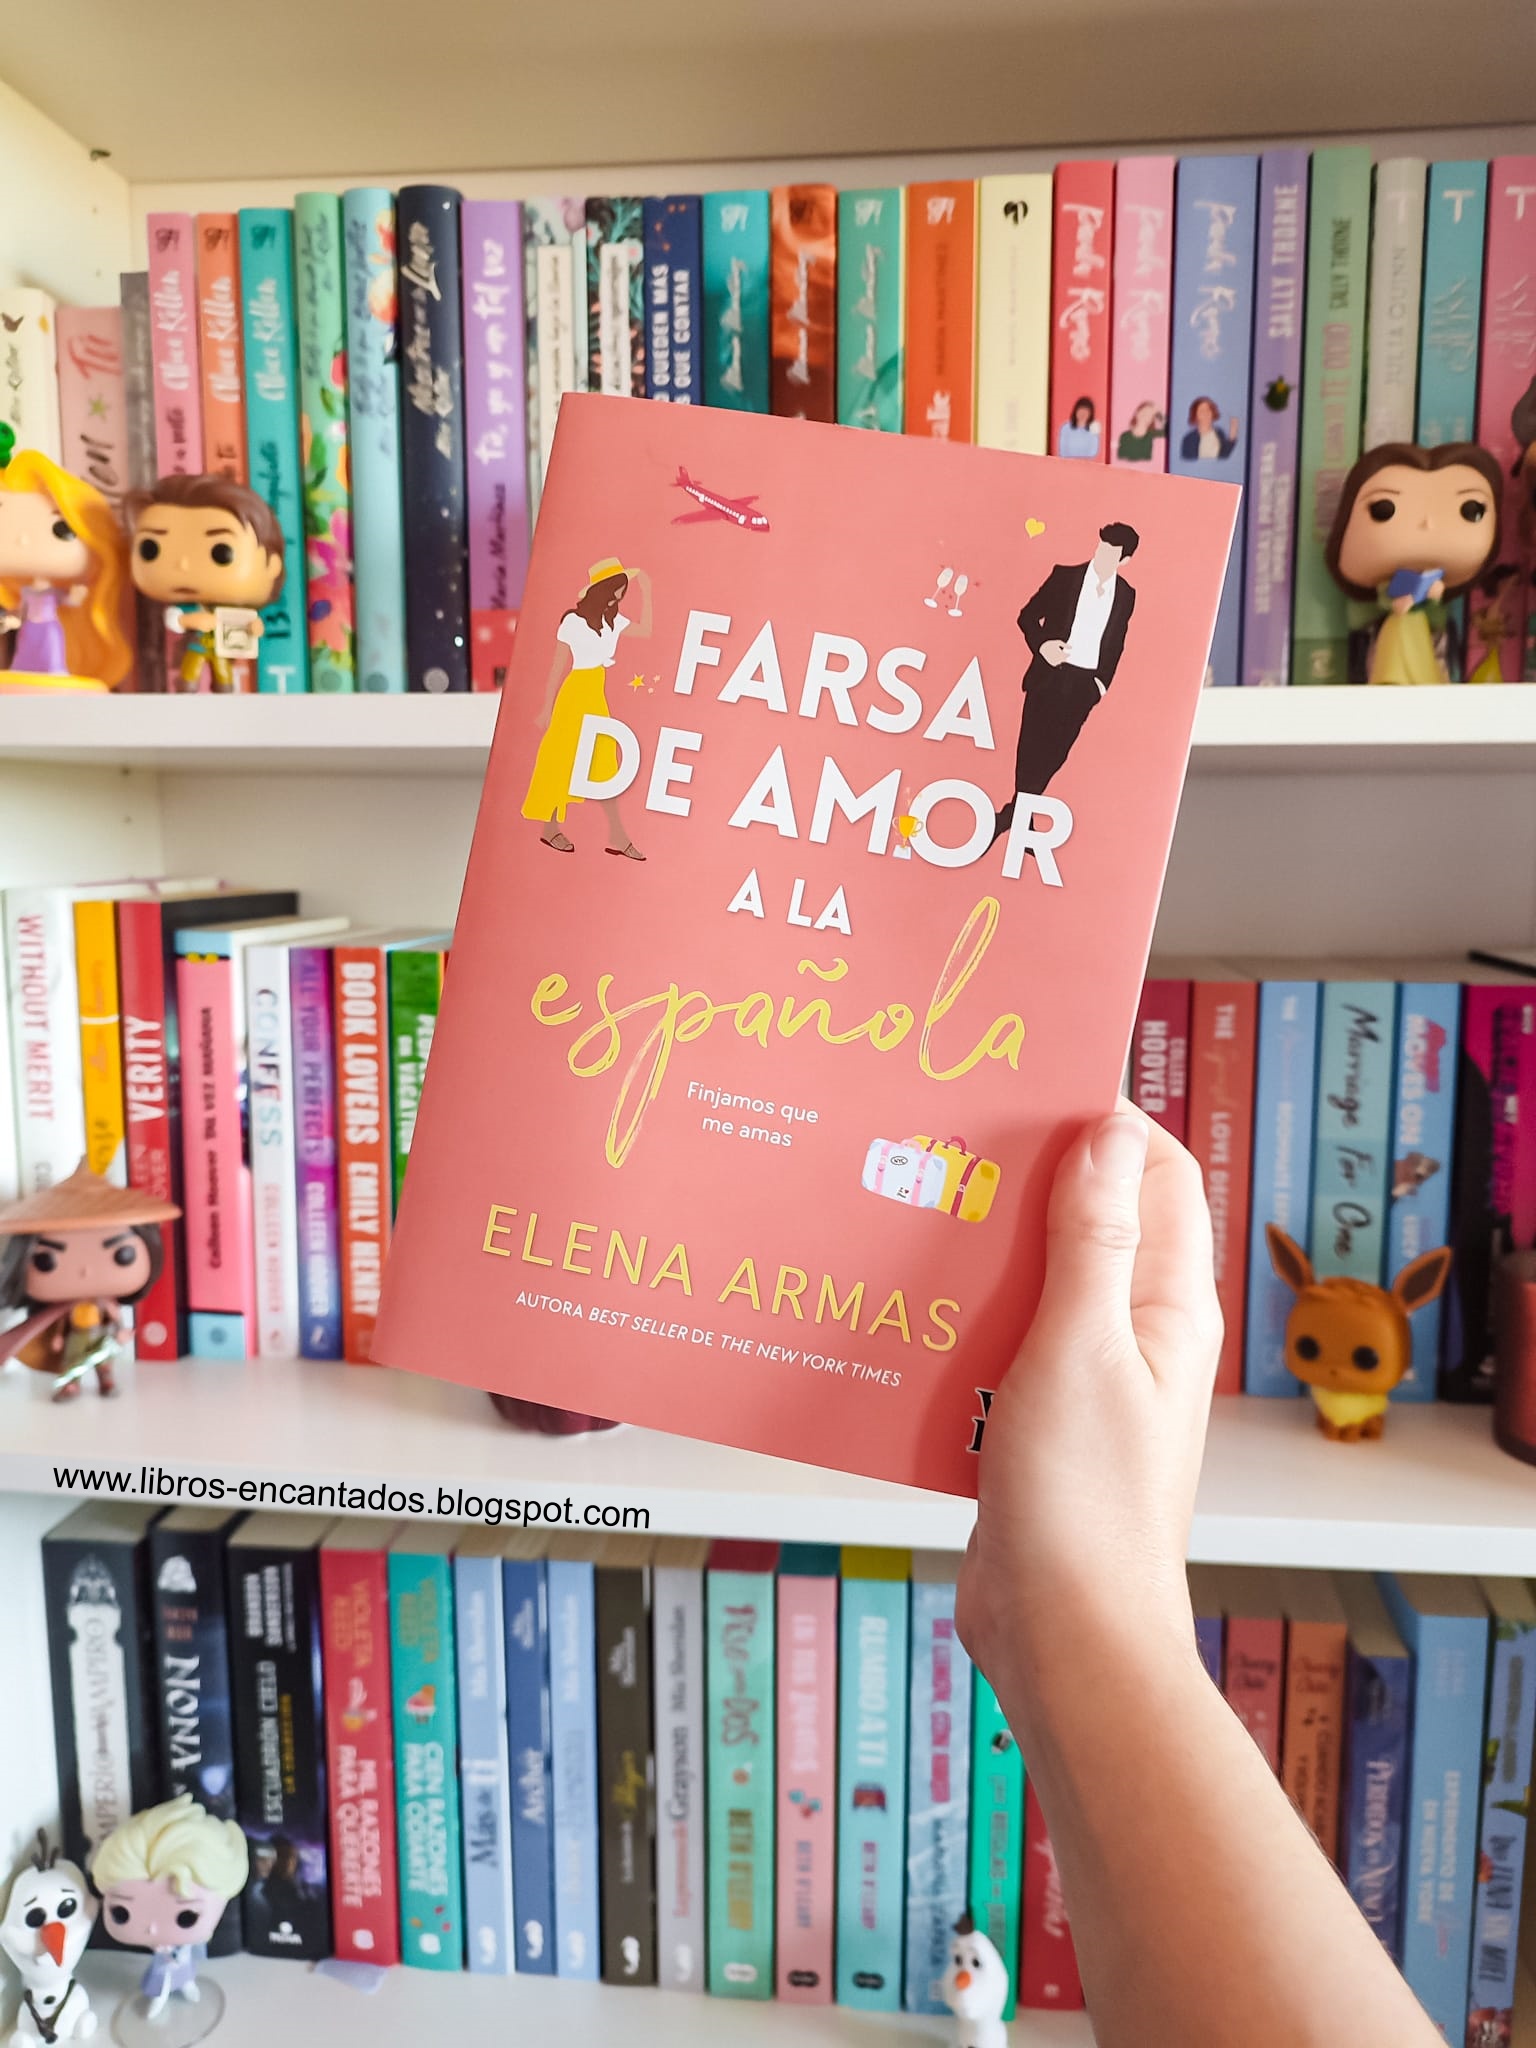 Libros Encantados: Reseña: Farsa de amor a la española de Elena Armas